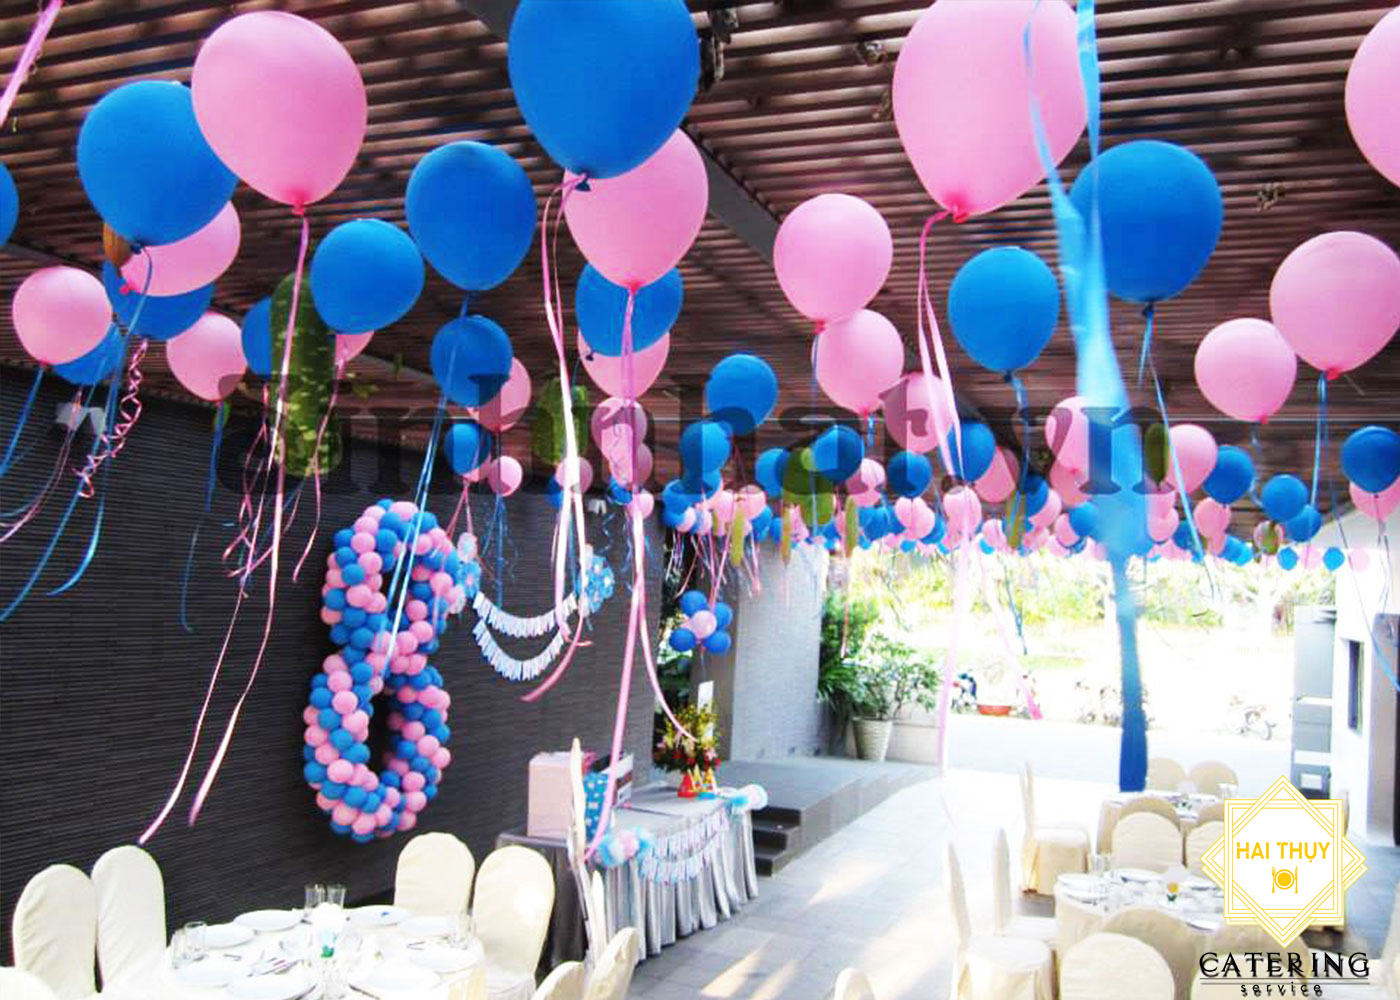 Khám phá Quá Ngon  Nhà hàng tổ chức sinh nhật cho bé tại quận Tân Bình   Nhà hàng Quá Ngon